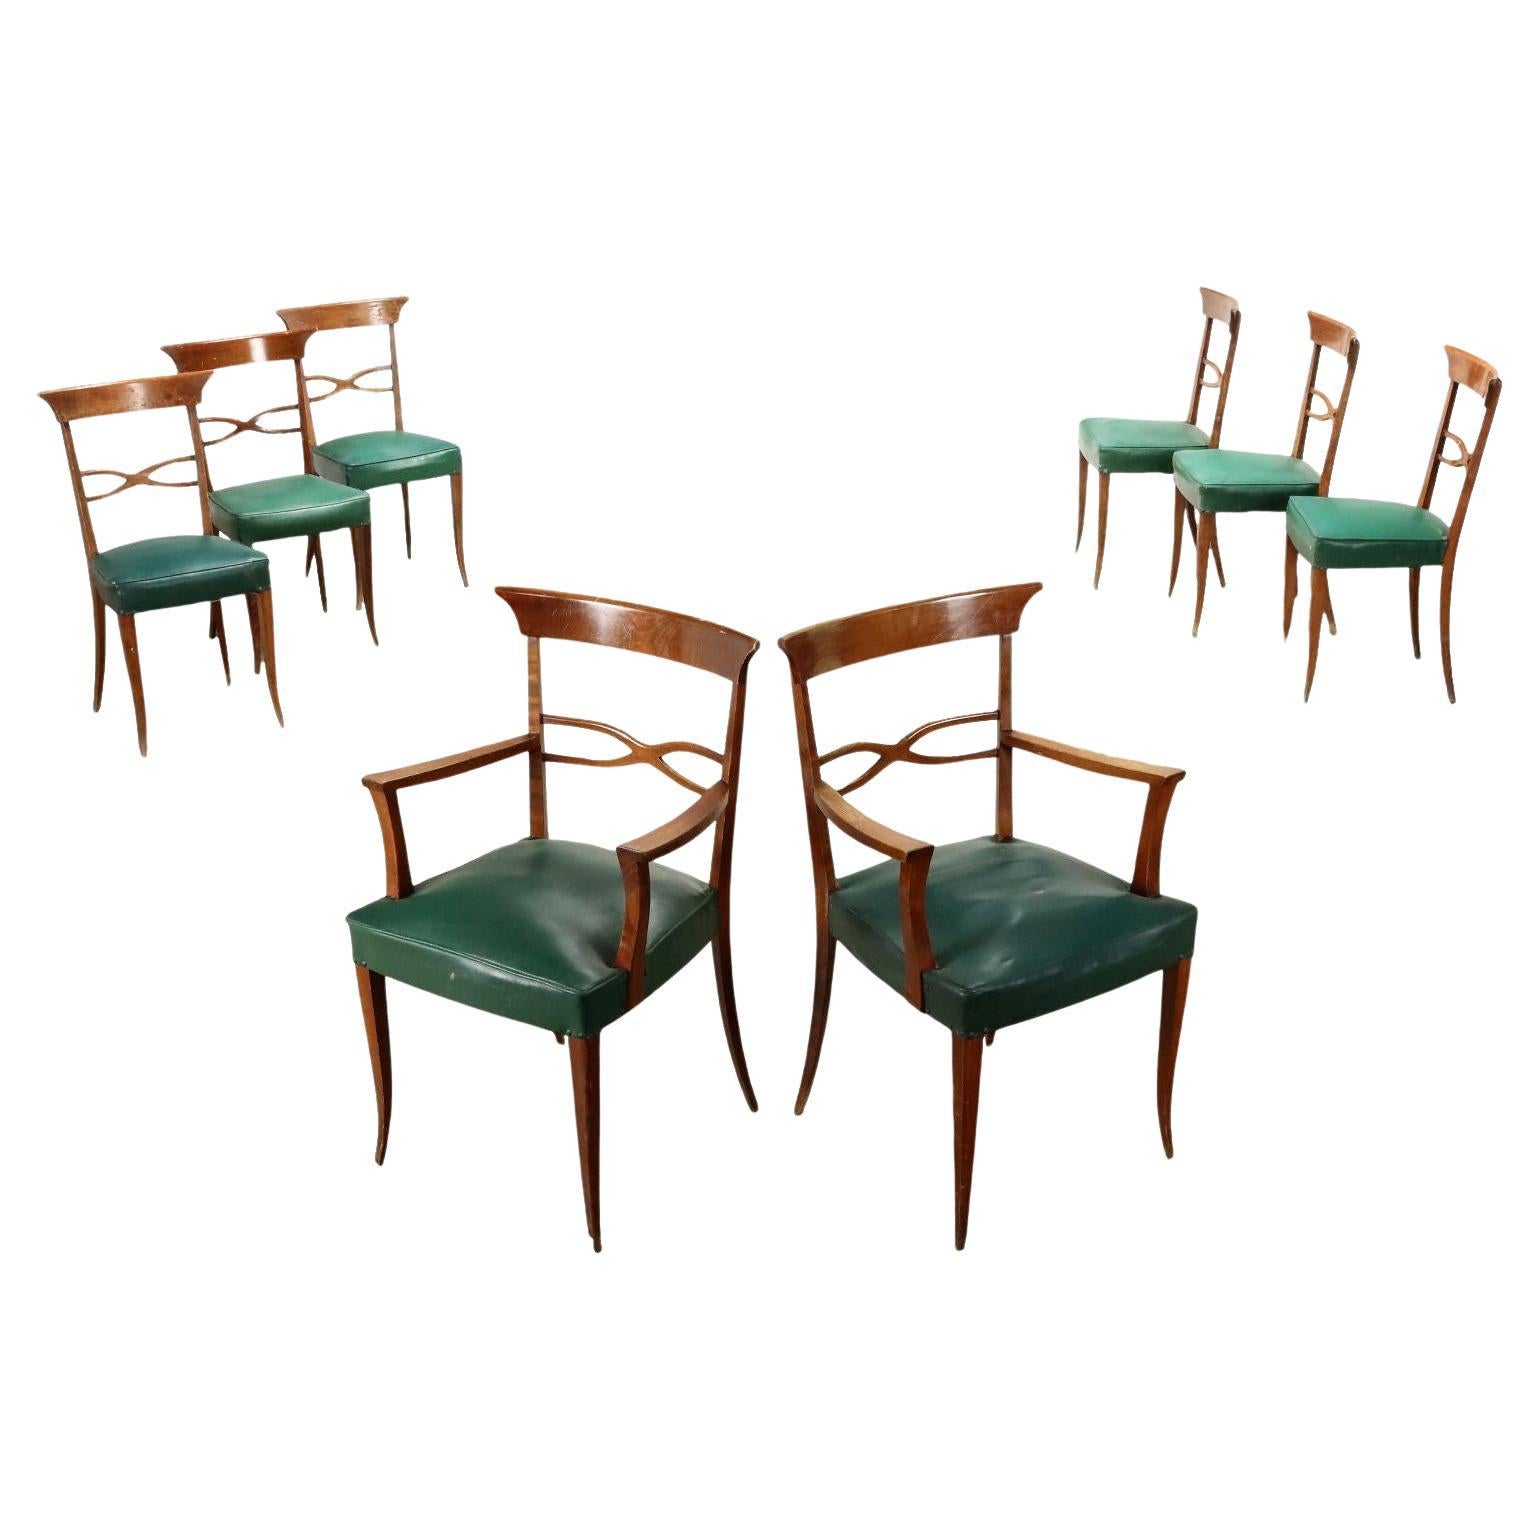 Groupe de six chaises et deux fauteuils des années 1950 en hêtre et similicuir vert